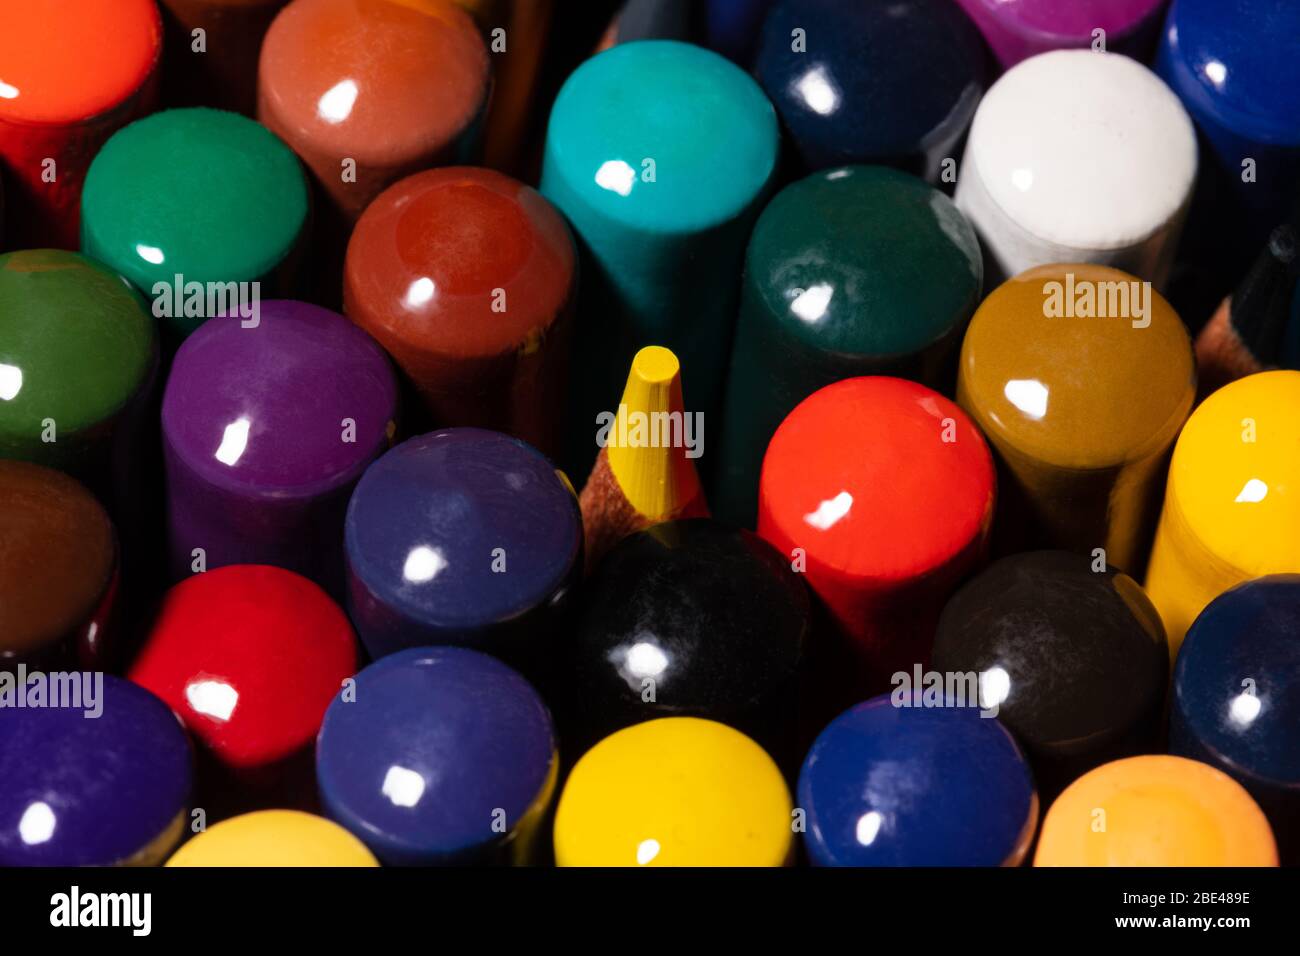 Immagine macro di un set di matite colorate dell'artista in una tazza strettamente raggruppate con le spalle rivolte verso l'alto con una punta di matita gialla che si accoppa dal centro A. Foto Stock